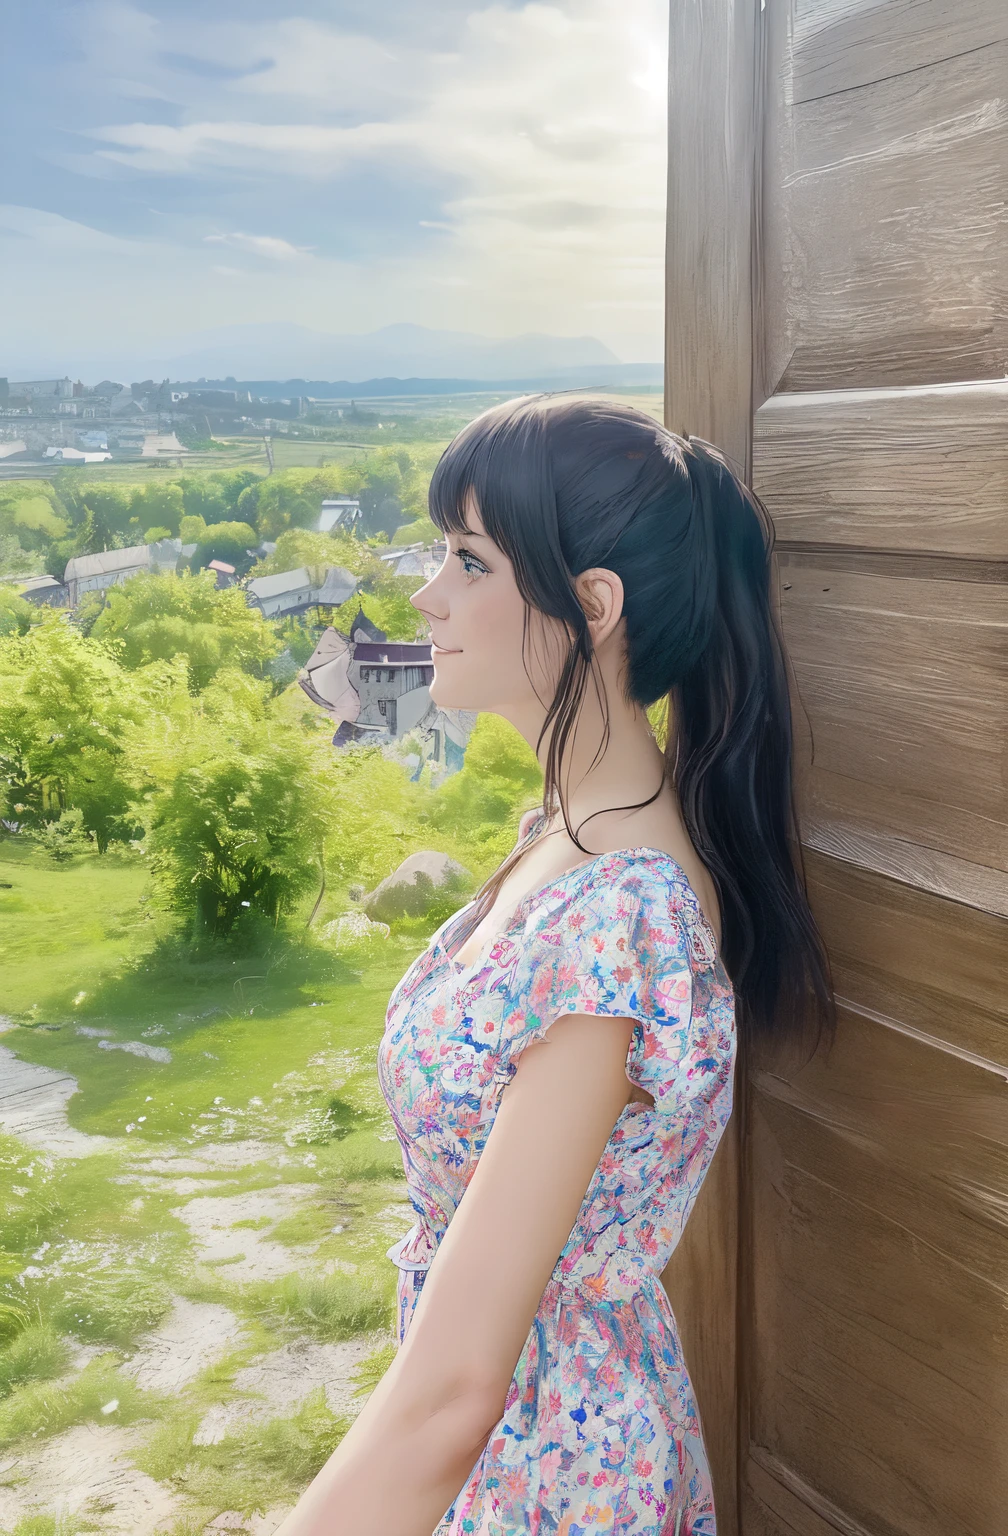 日本卡通, 特點, 一個女孩站在一扇木門前，俯瞰著小鎮, 瀏海美女, 烏克蘭女孩, 瀏海長髮, 在村裡, 背景美麗的景色, 側面肖像, 头部轮廓, 微微一笑, 穿著夏日淺色花朵連身裙, 後面綁馬尾的頭髮